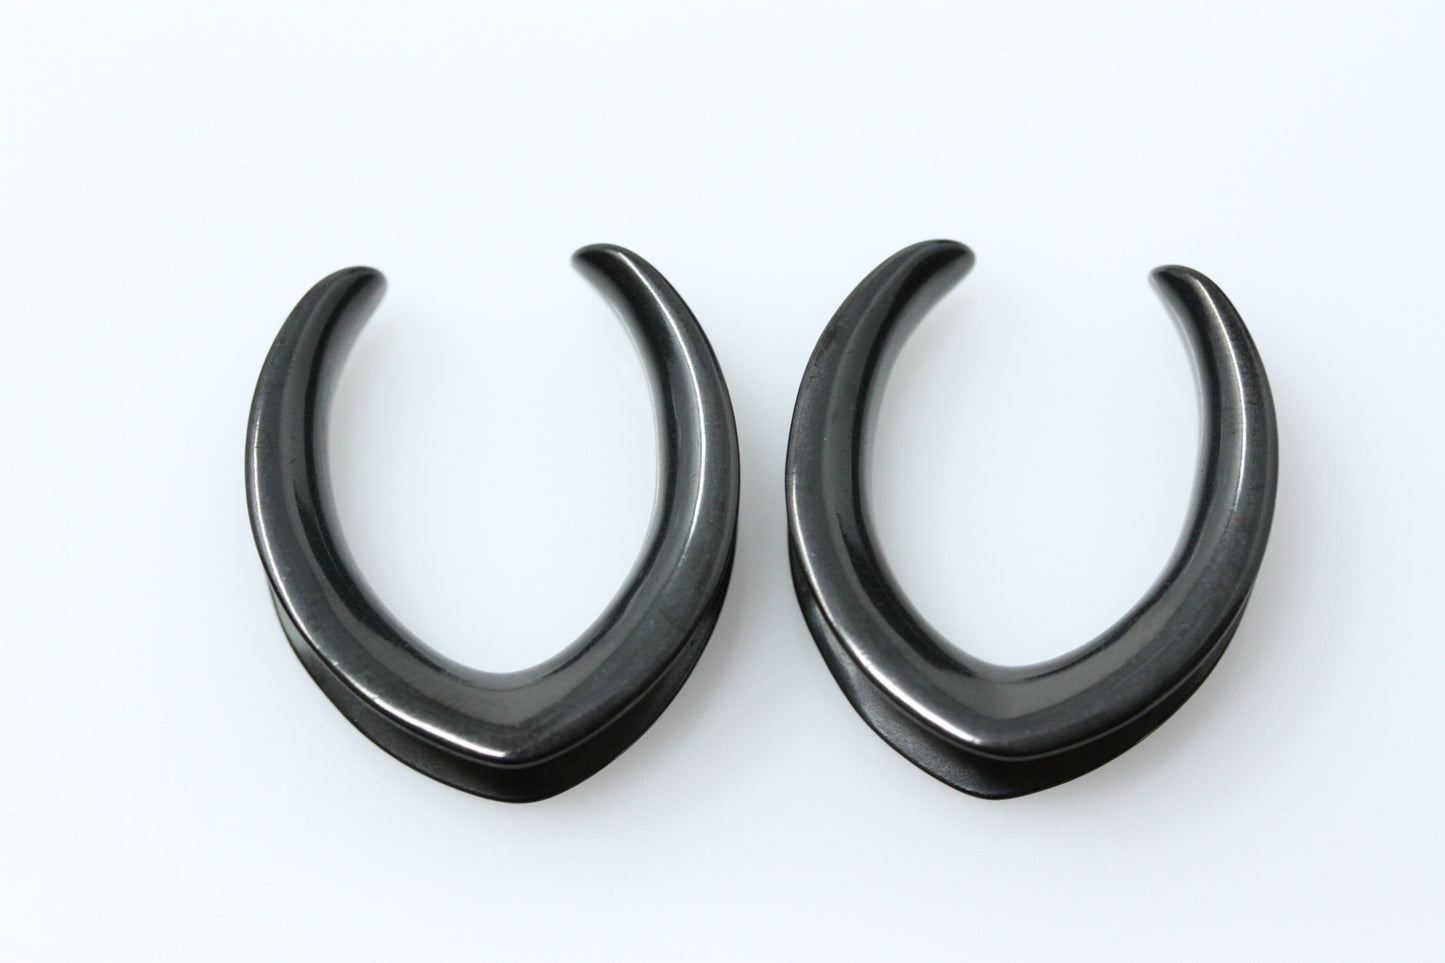 Plain black stainless steel saddles